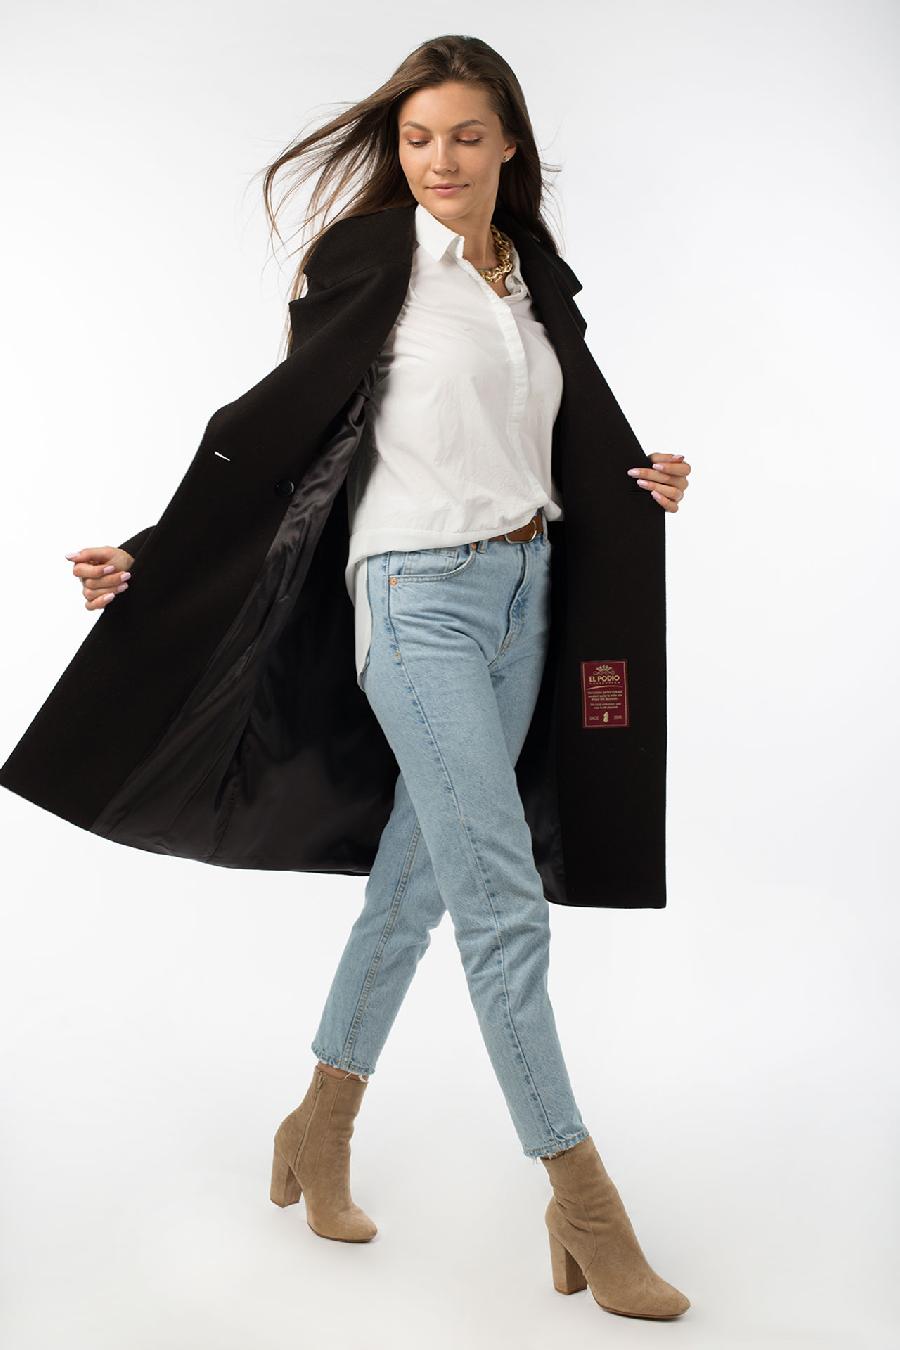 01-10622 Пальто женское демисезонное (пояс) валяная шерсть черный